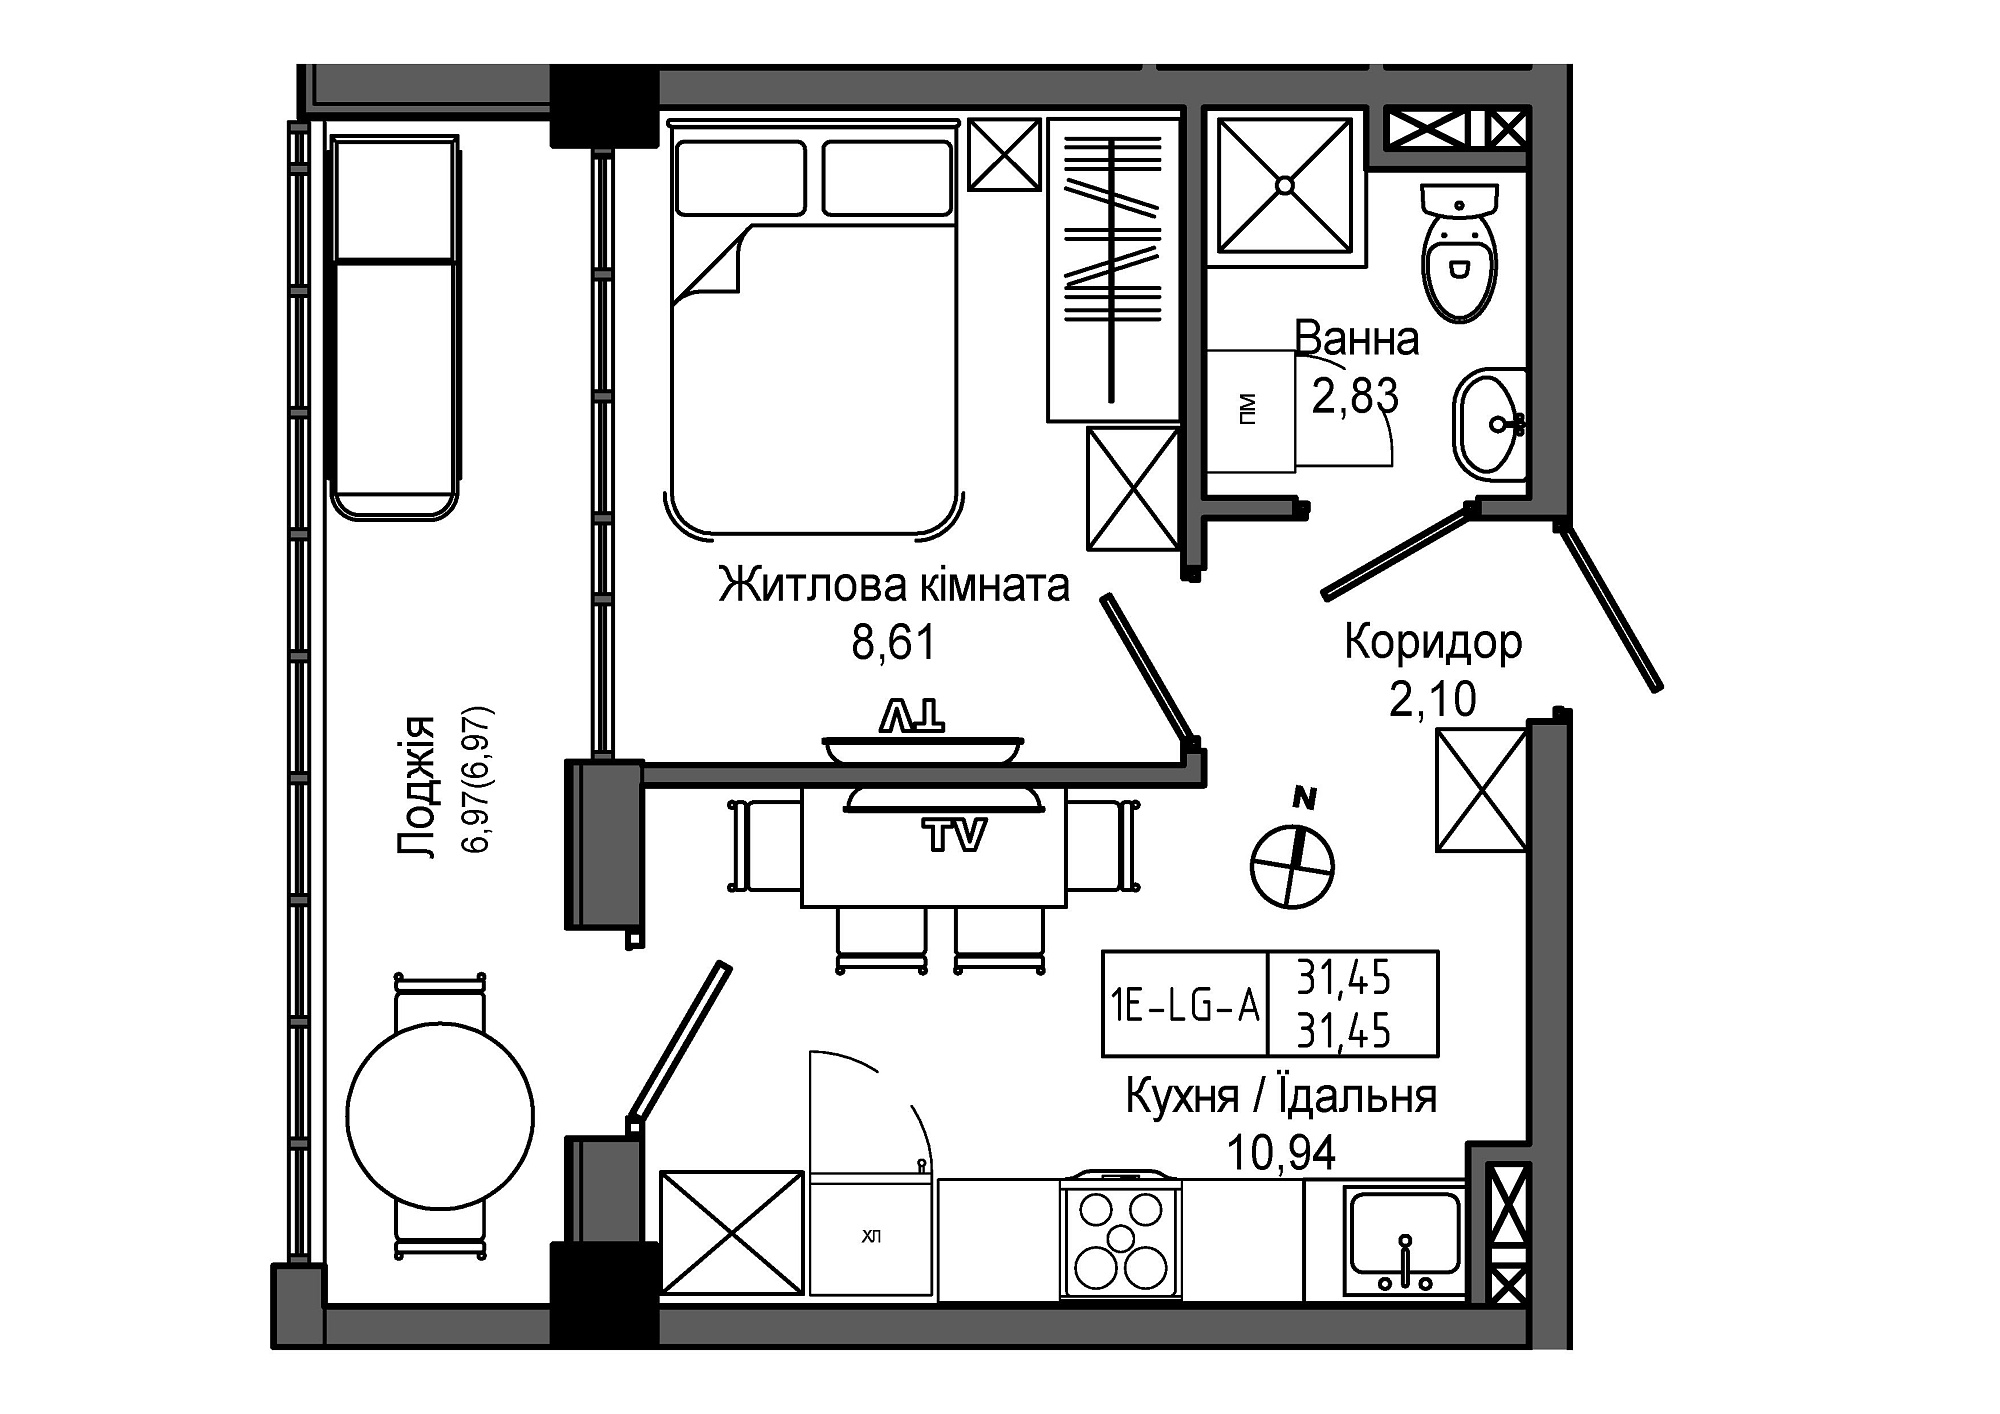 Планировка 1-к квартира площей 31.45м2, UM-006-00/0011.